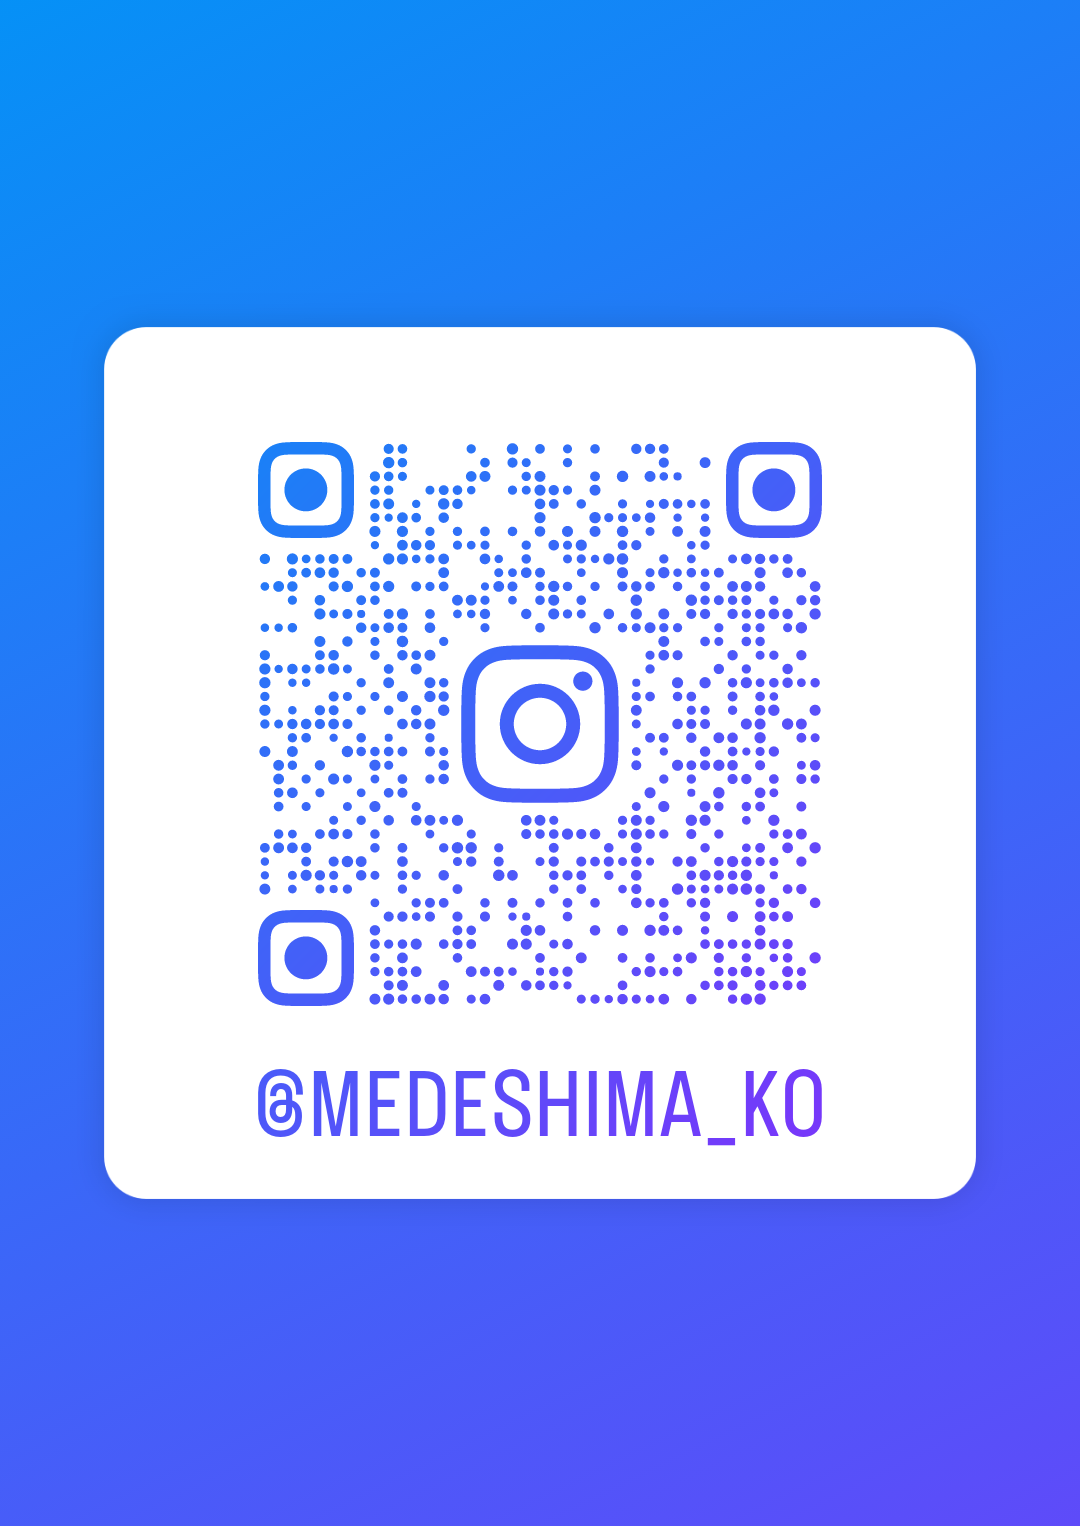 愛島公民館公式Instagramの二次元コードの画像